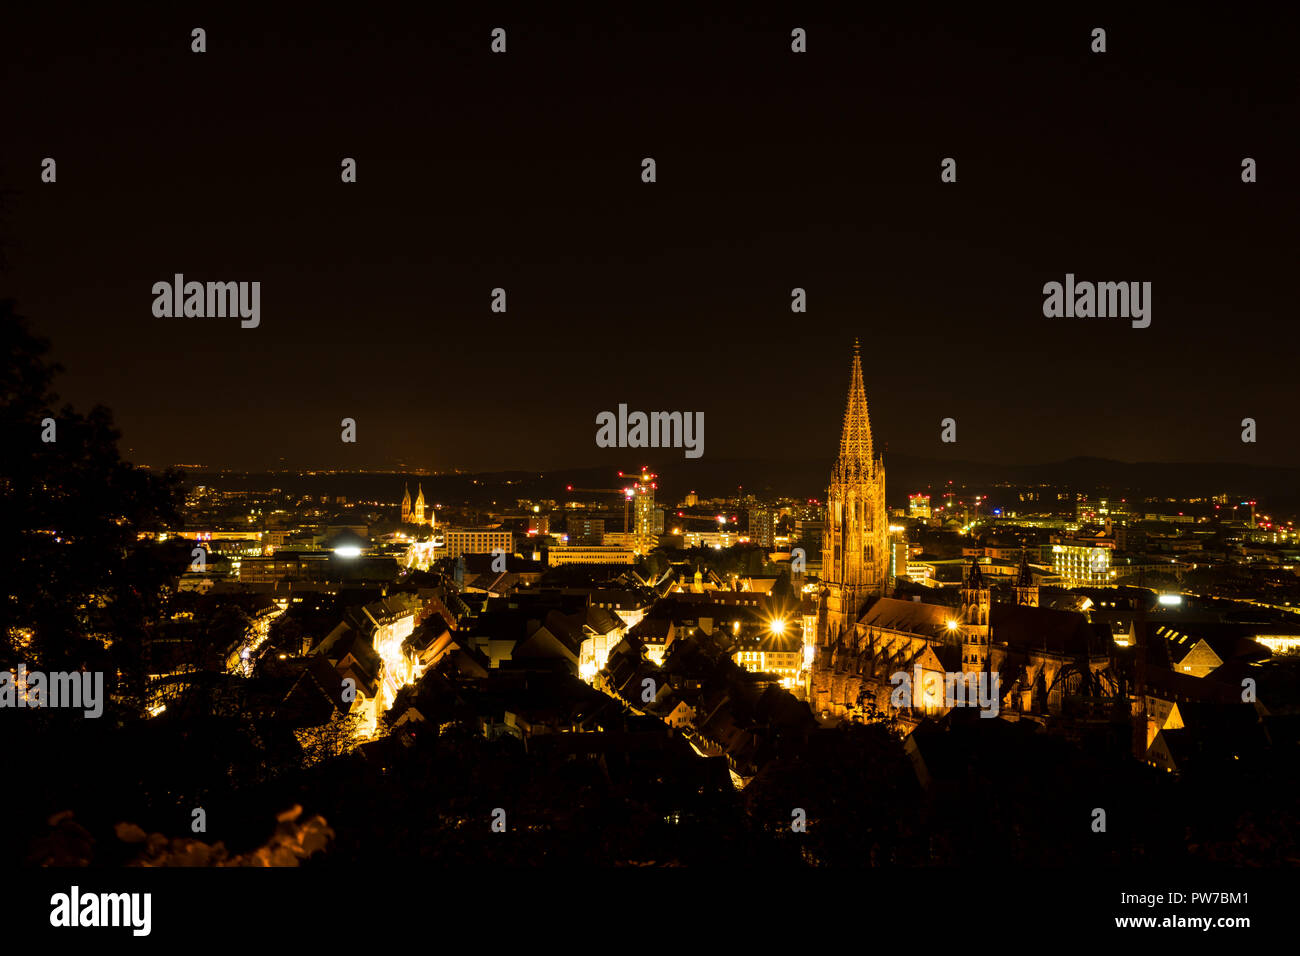 In Germania, di notte le luci su Freiburg im Breisgau e il minster Foto Stock